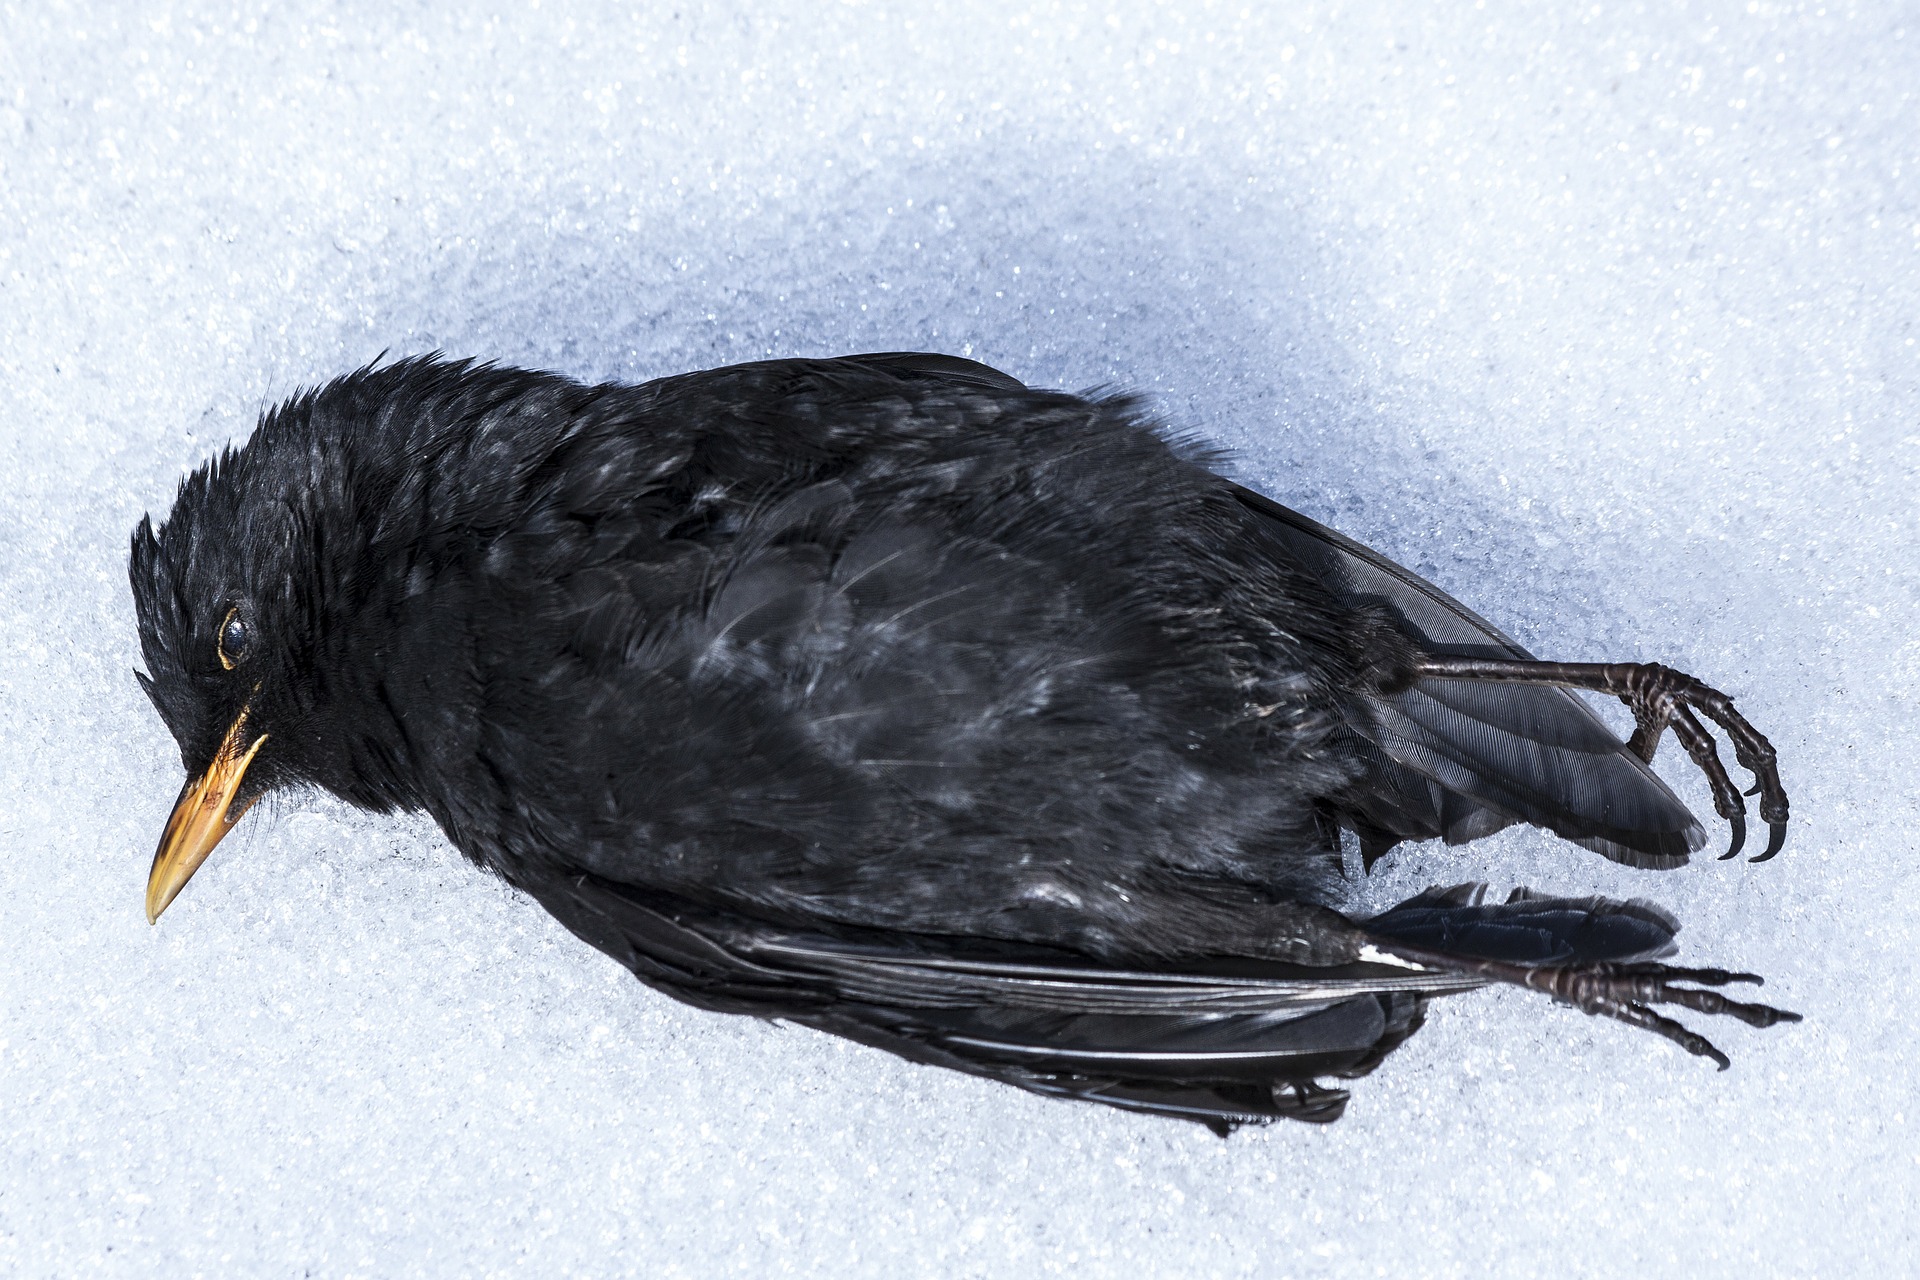 Dead Blackbird, Animal, Bird, Black, Blackbird, HQ Photo